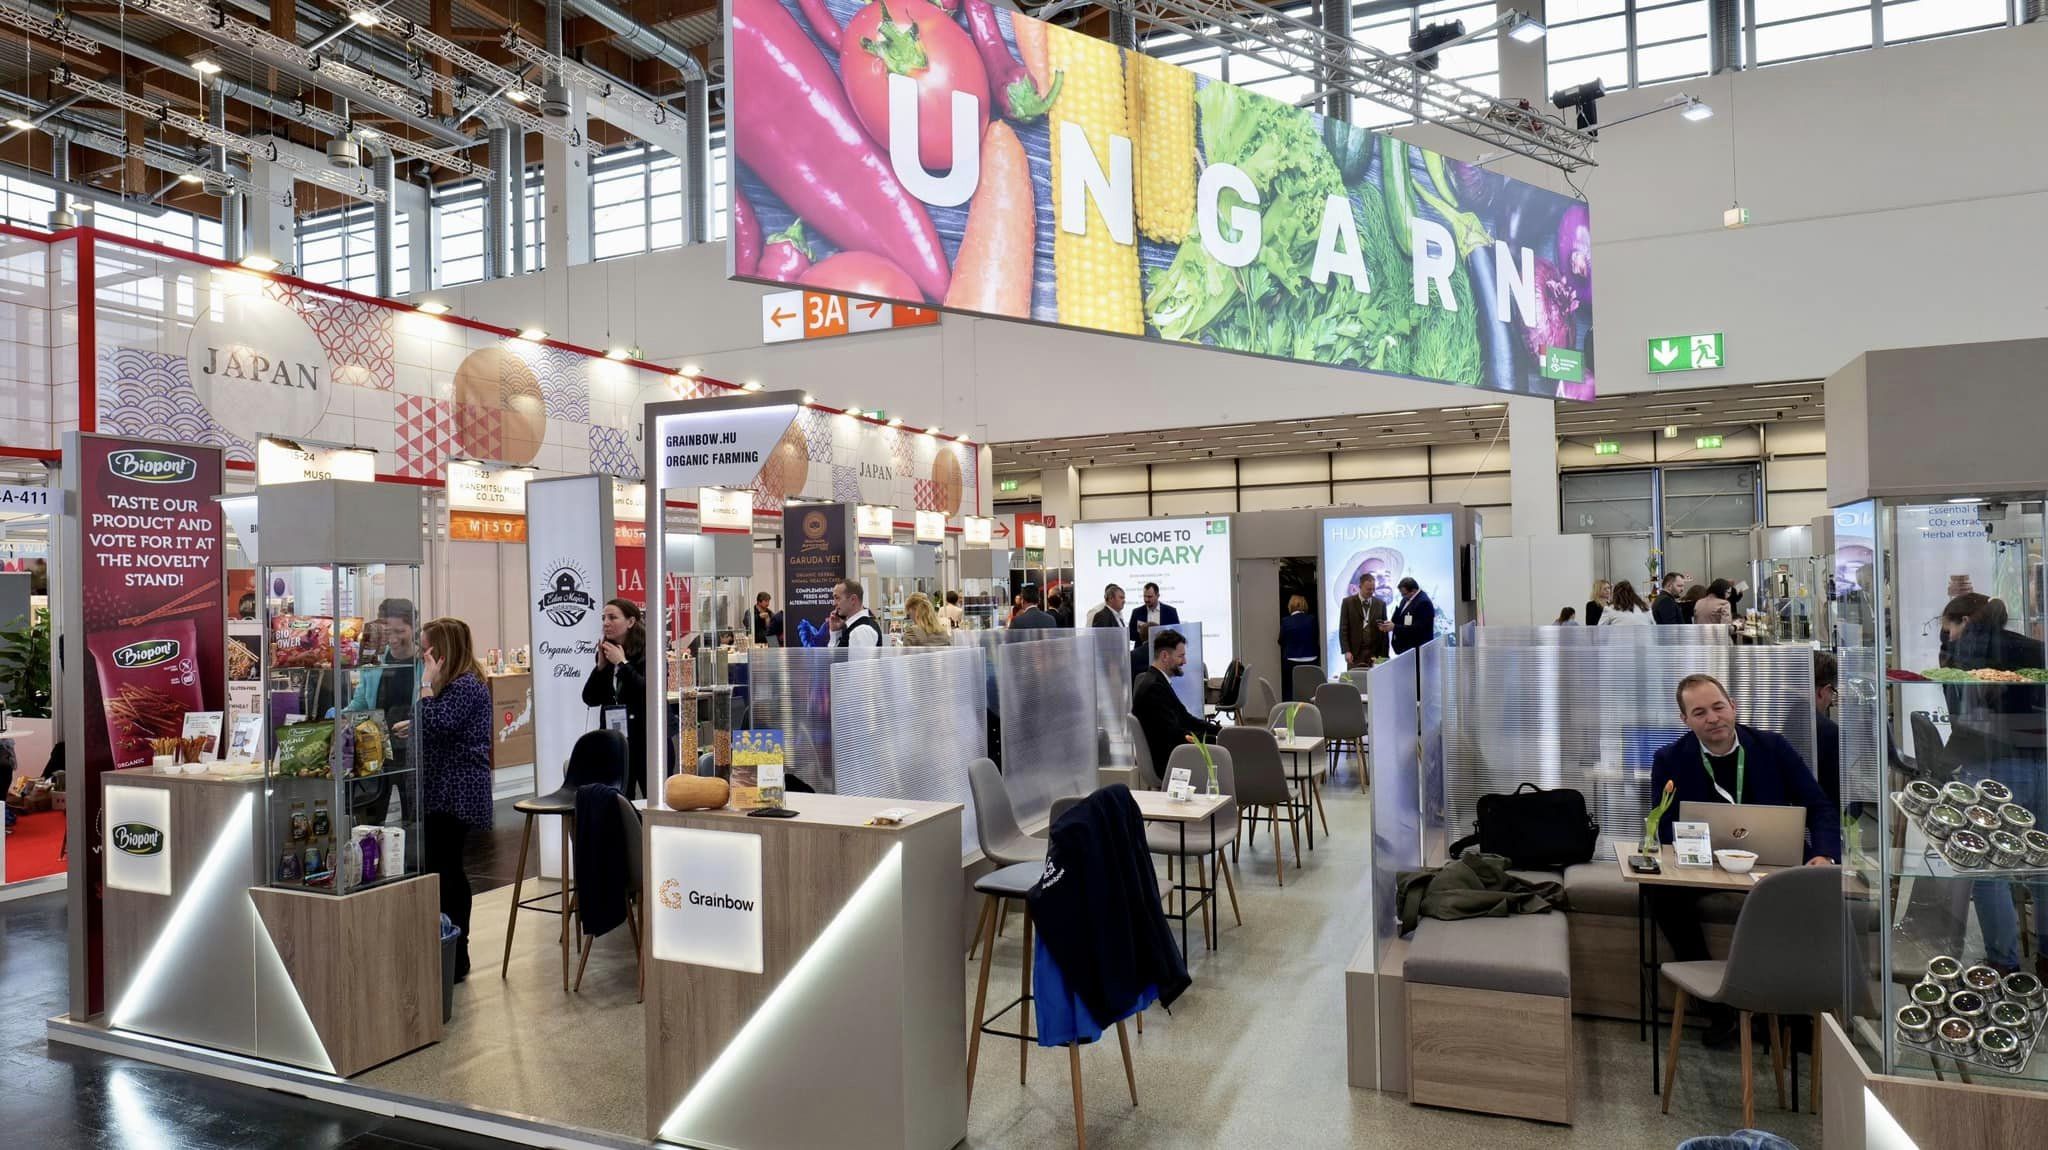 Ungarische Unternehmen auf der größten europäischen Messe für Bio-Lebensmittel